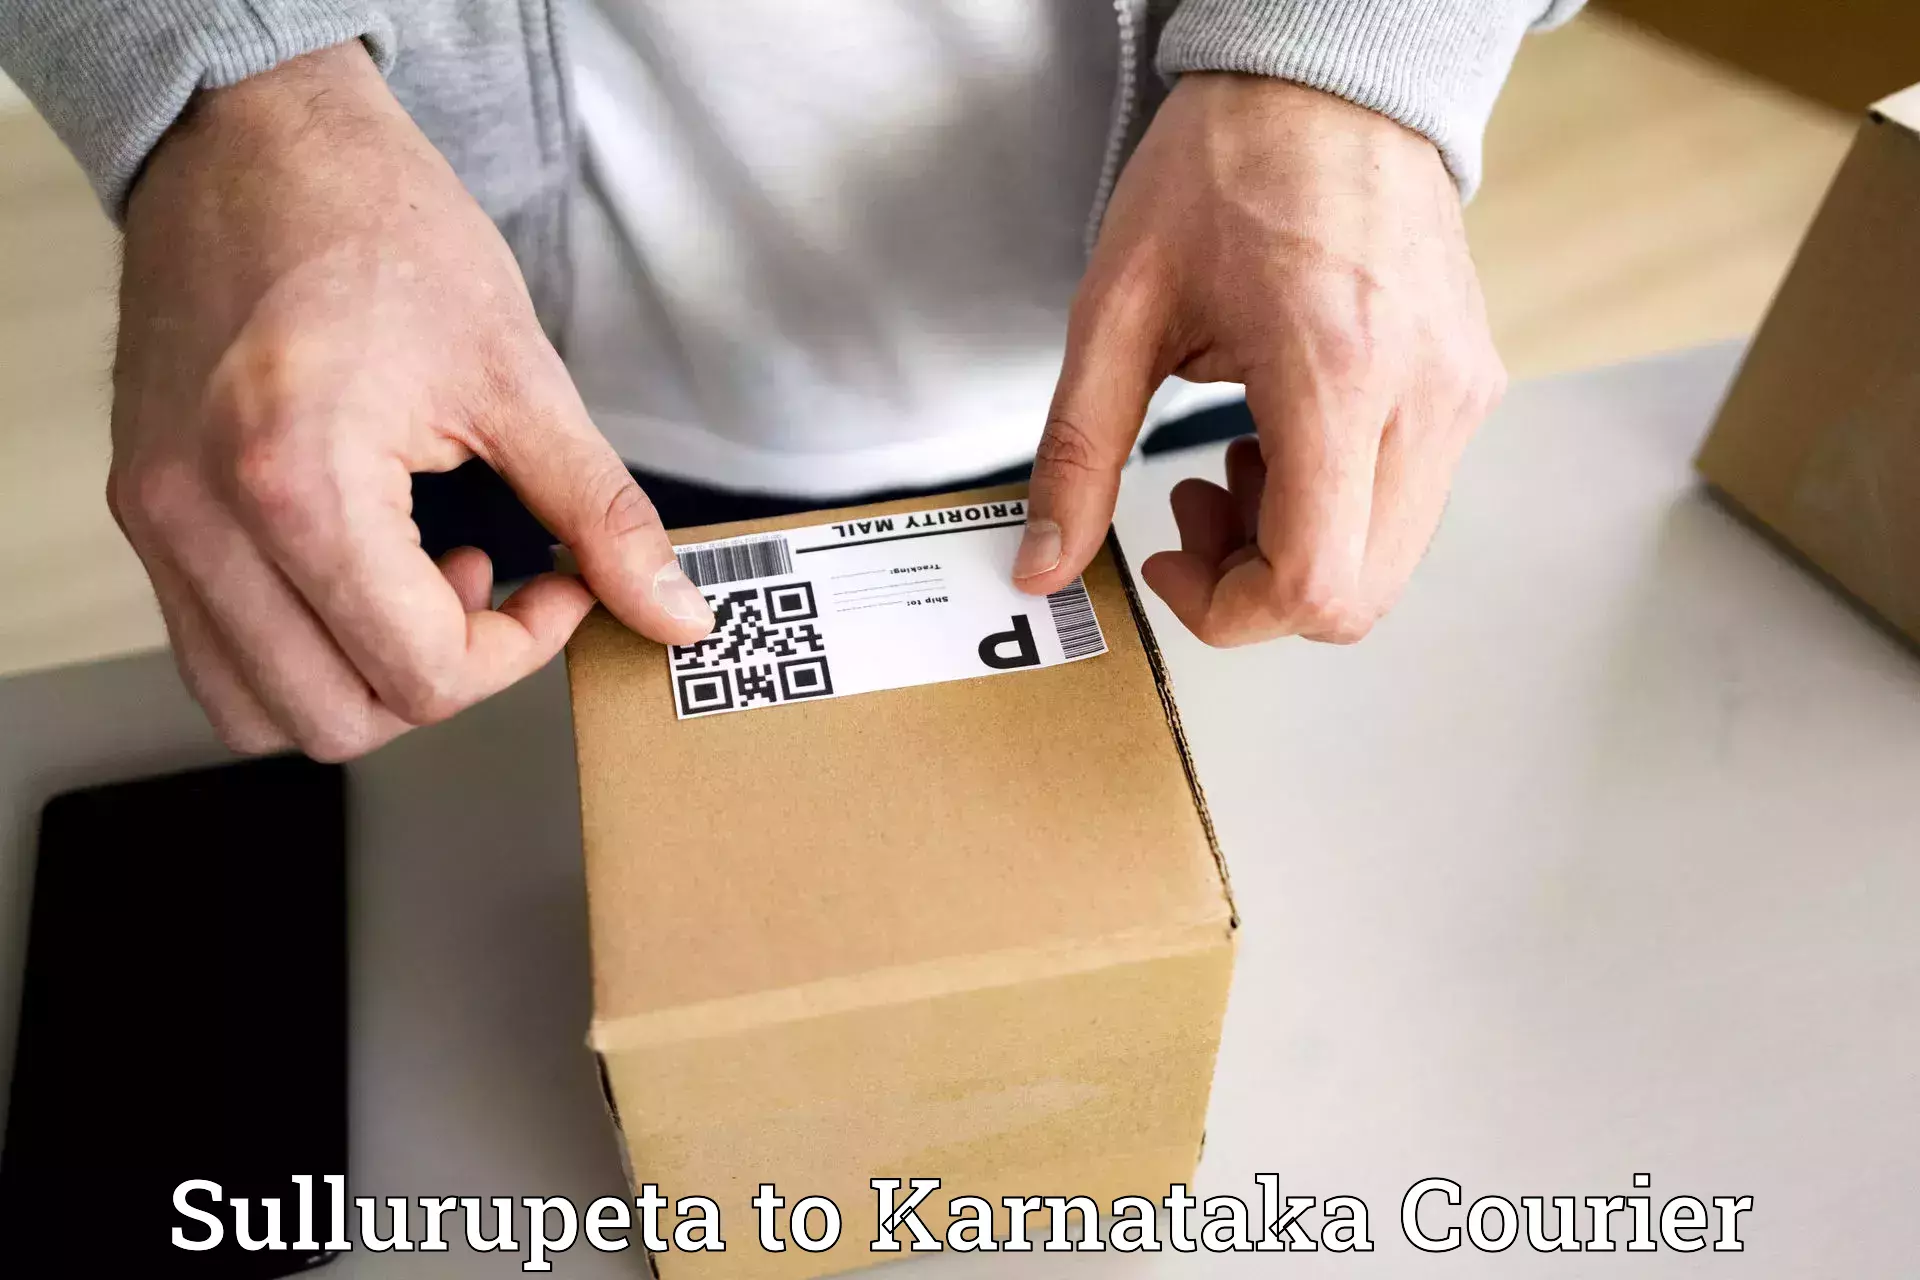 Reliable courier service Sullurupeta to Saundatti Yallamma